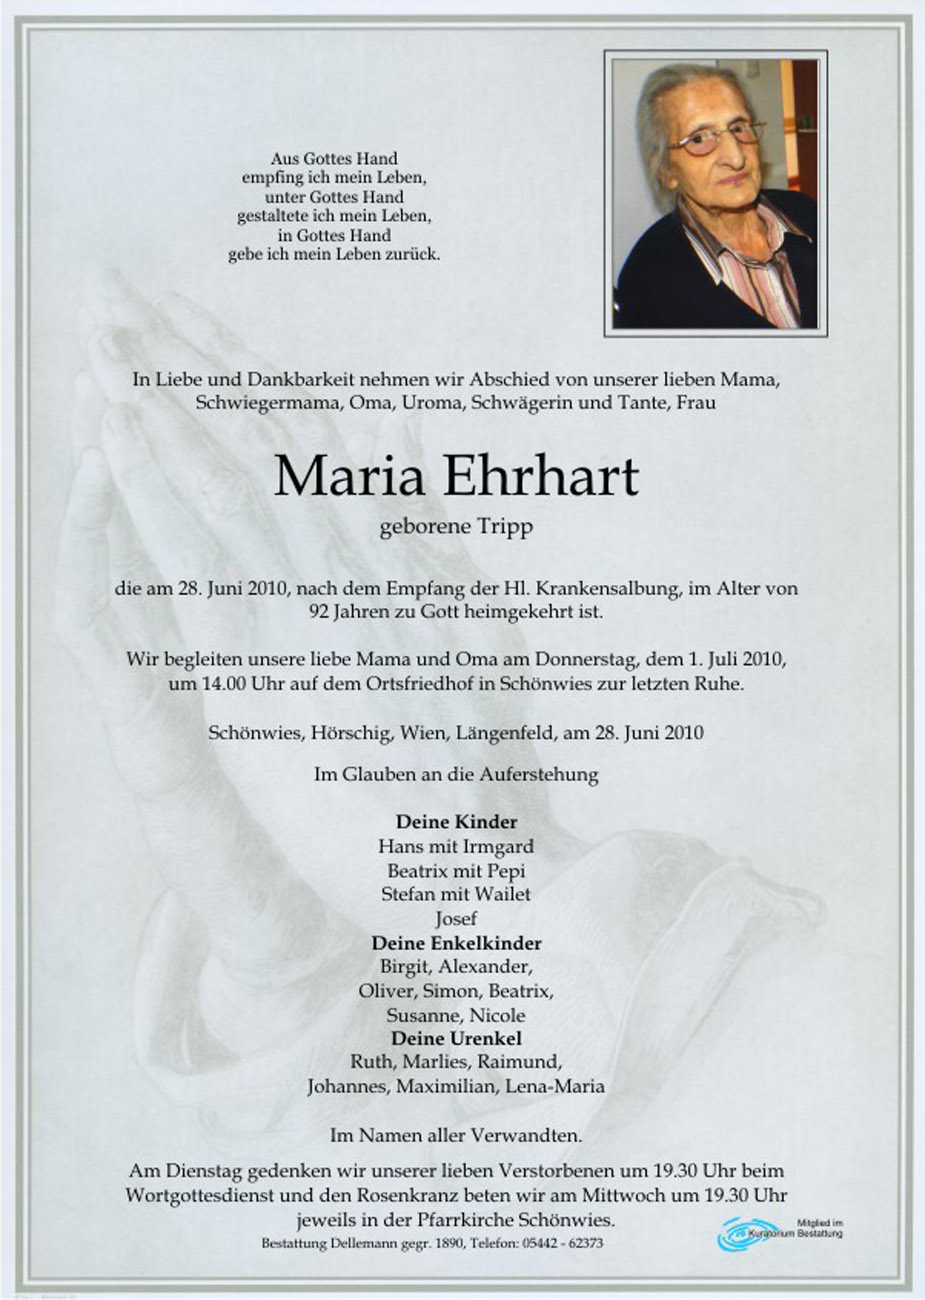   Maria Ehrhart